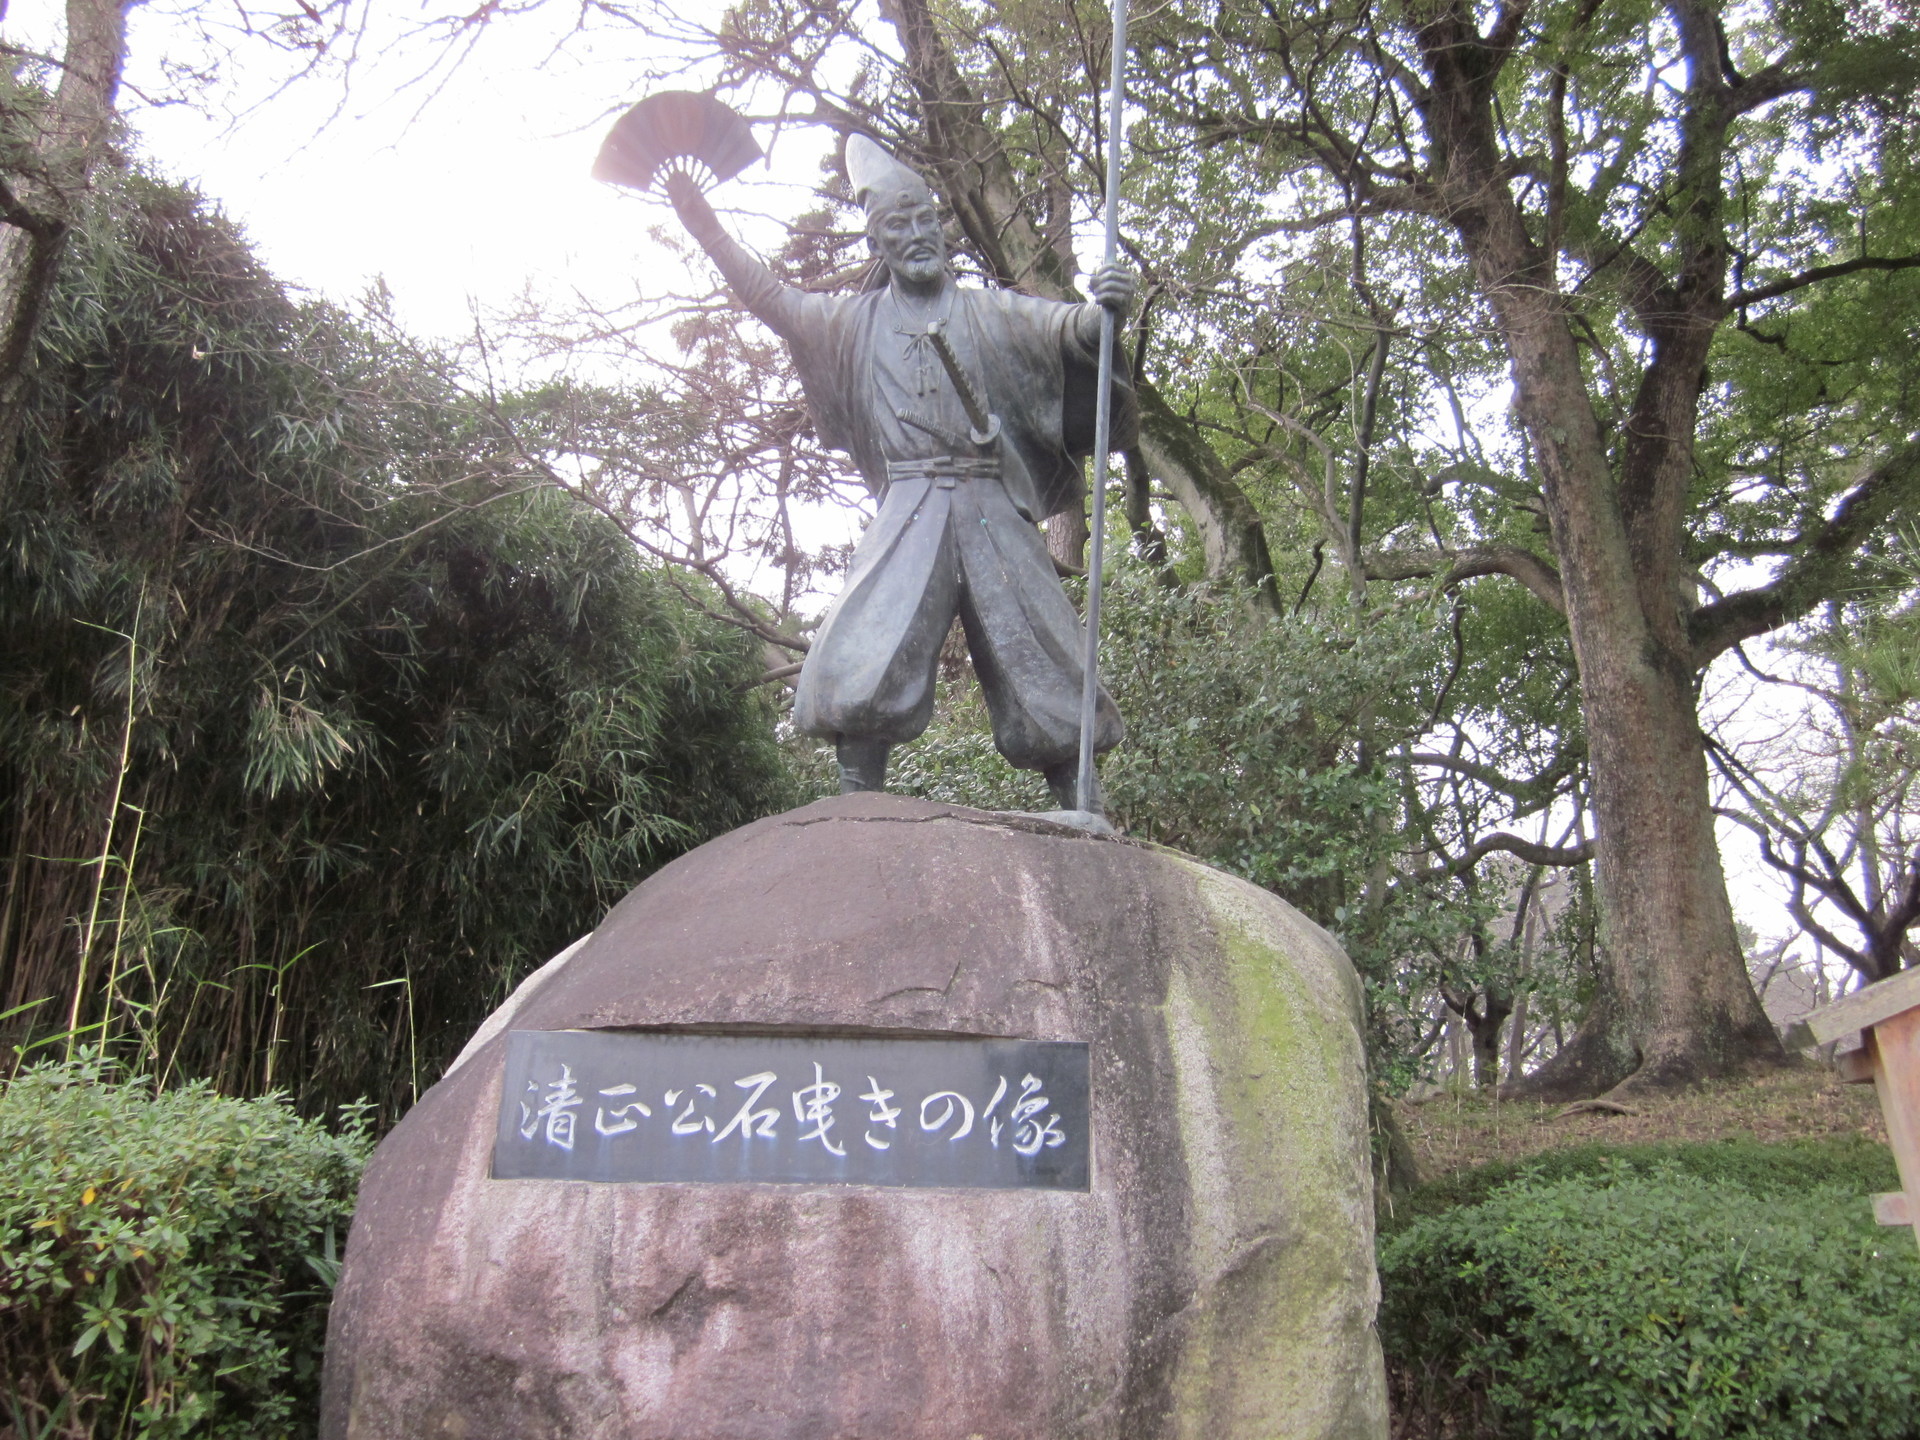 名古屋城 加藤清正 石曳きの像 銅像と飯